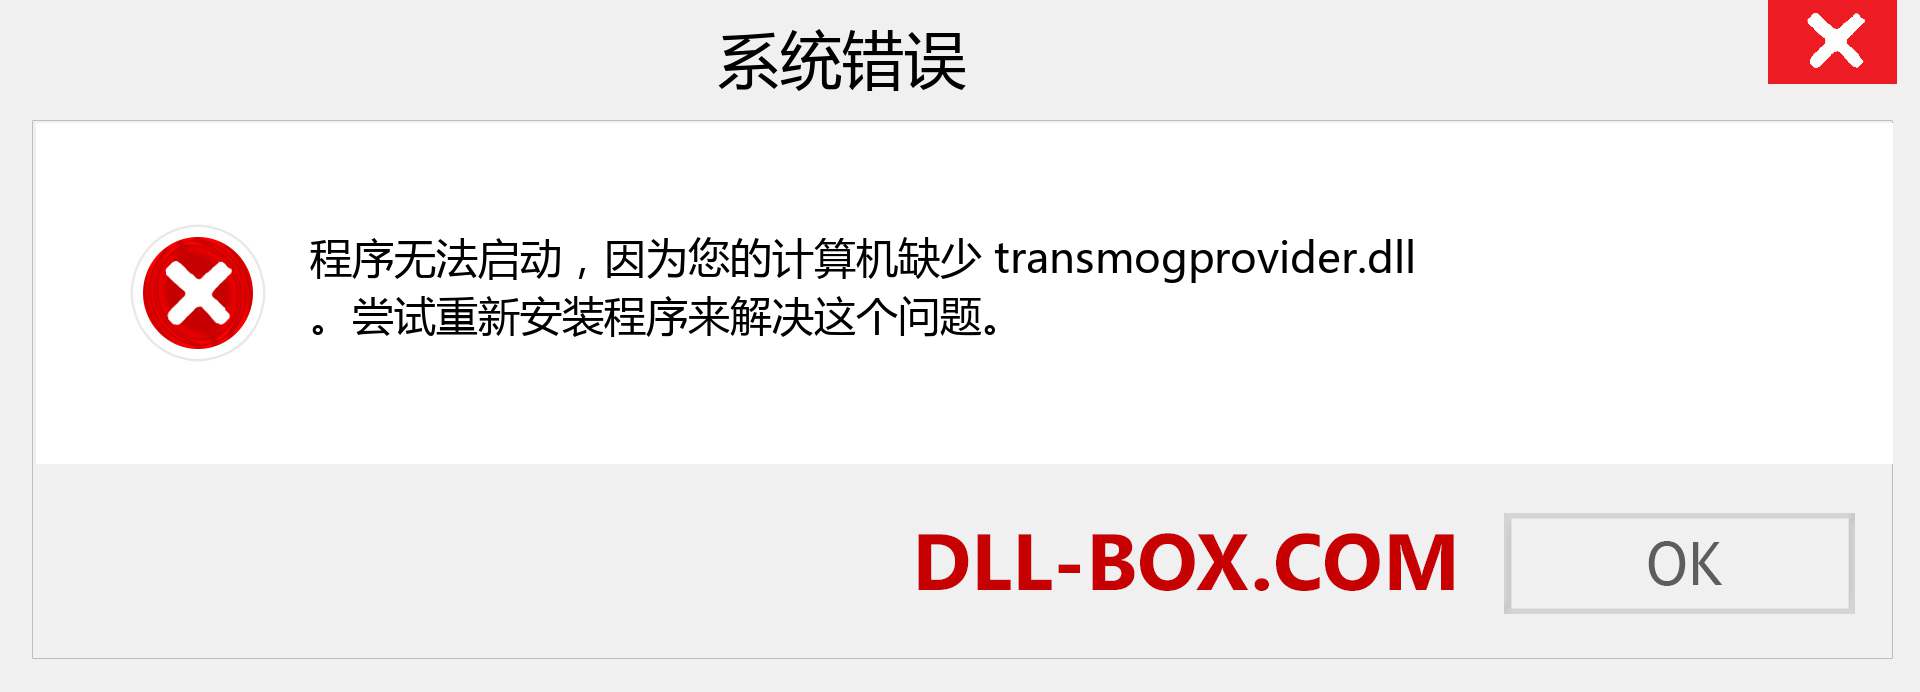 transmogprovider.dll 文件丢失？。 适用于 Windows 7、8、10 的下载 - 修复 Windows、照片、图像上的 transmogprovider dll 丢失错误